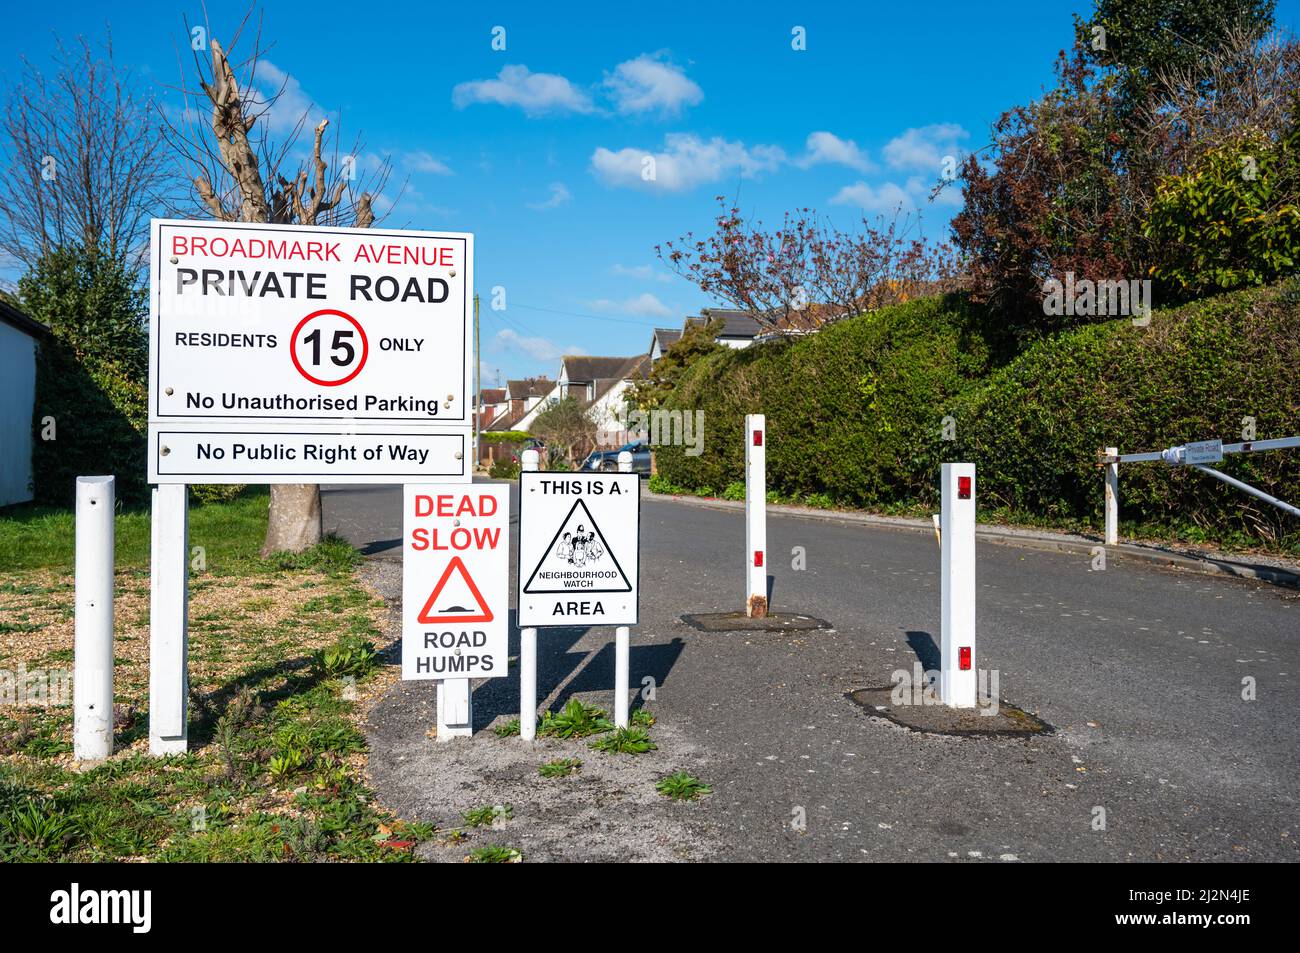 Entrée fermée avec panneau de limitation de vitesse 15MPH et panneau de signalisation Dead Slow vers une route privée à Broadmark Avenue, Rustington, West Sussex, Angleterre, Royaume-Uni. Banque D'Images